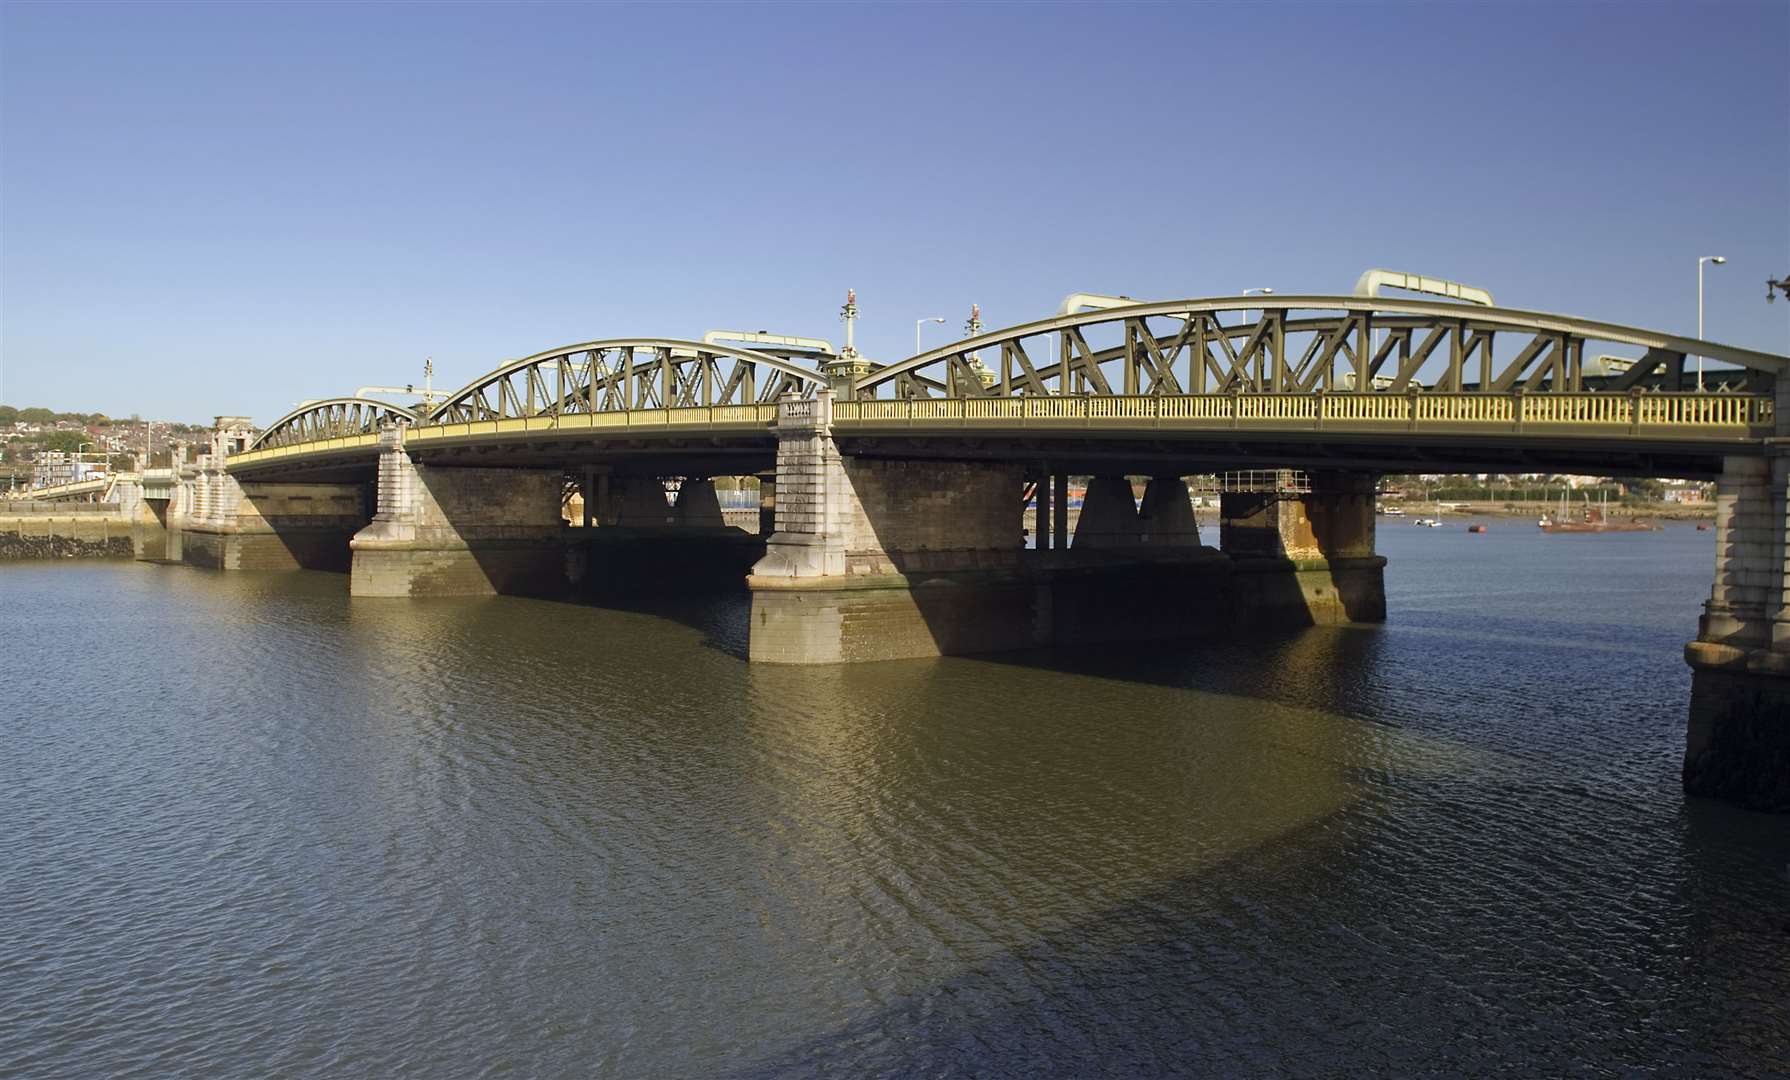 The Rochester Bridge